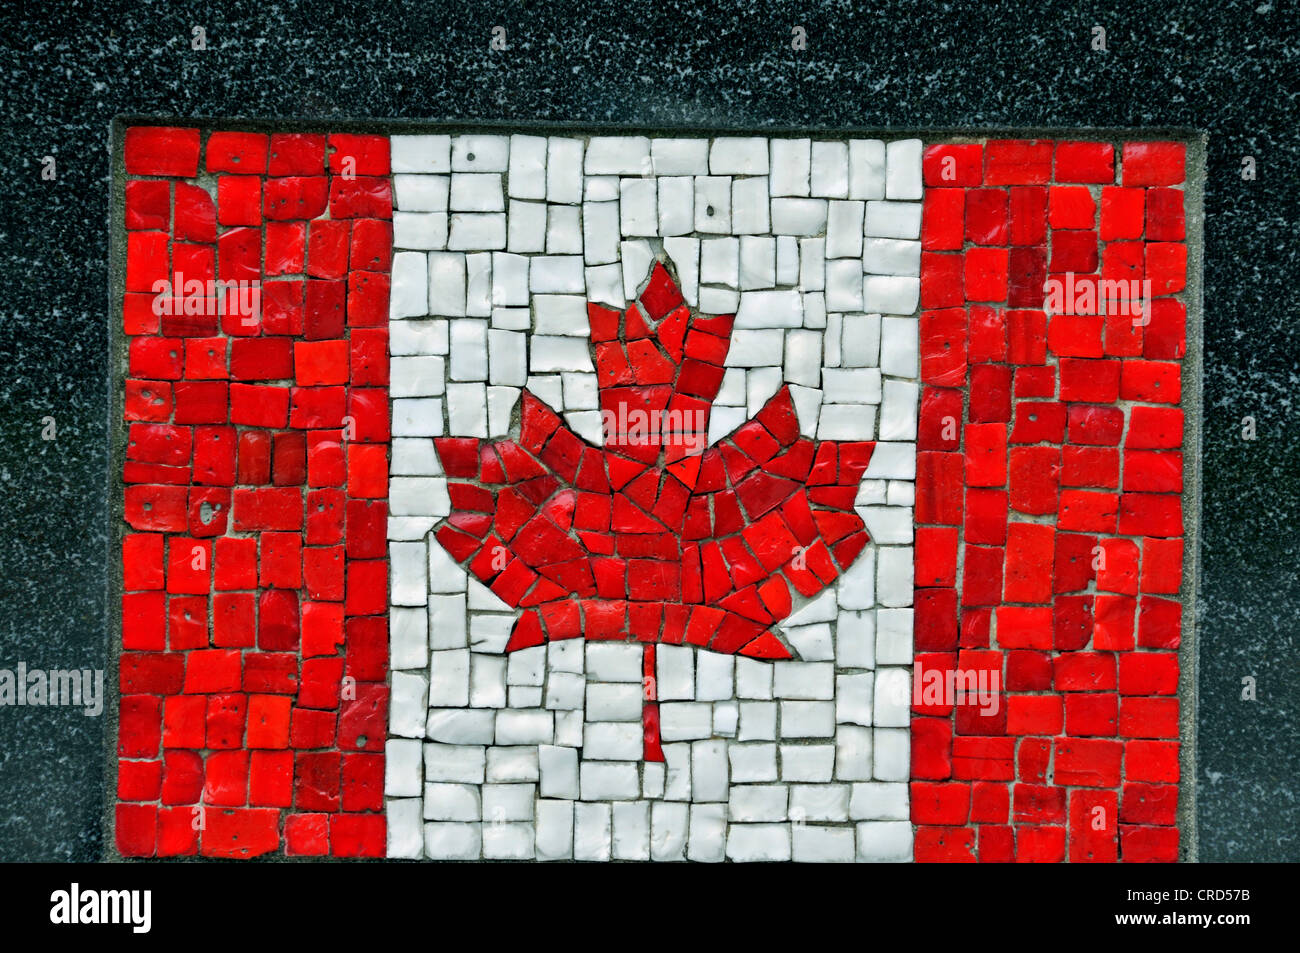 Flagg del Canada come un mosaico nel quartiere finanziario - Monumento del soldato universale, USA, New York City, Manhattan Foto Stock